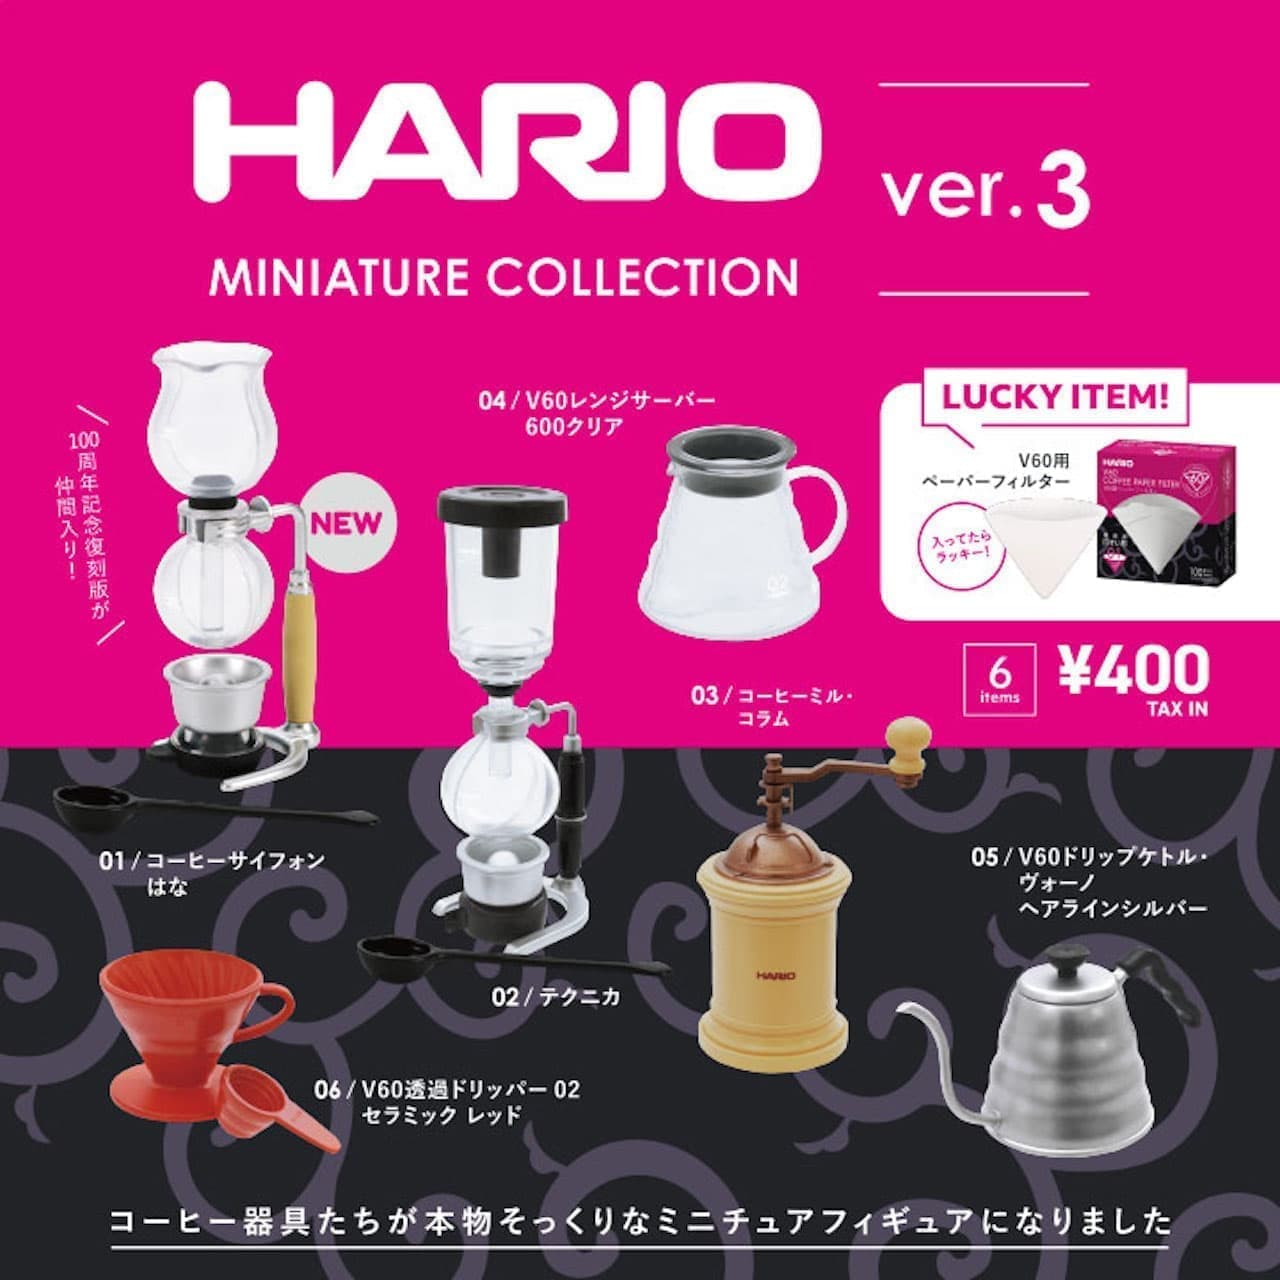 ケンエレファント「HARIO MINIATURE COLLECTION ver.3」